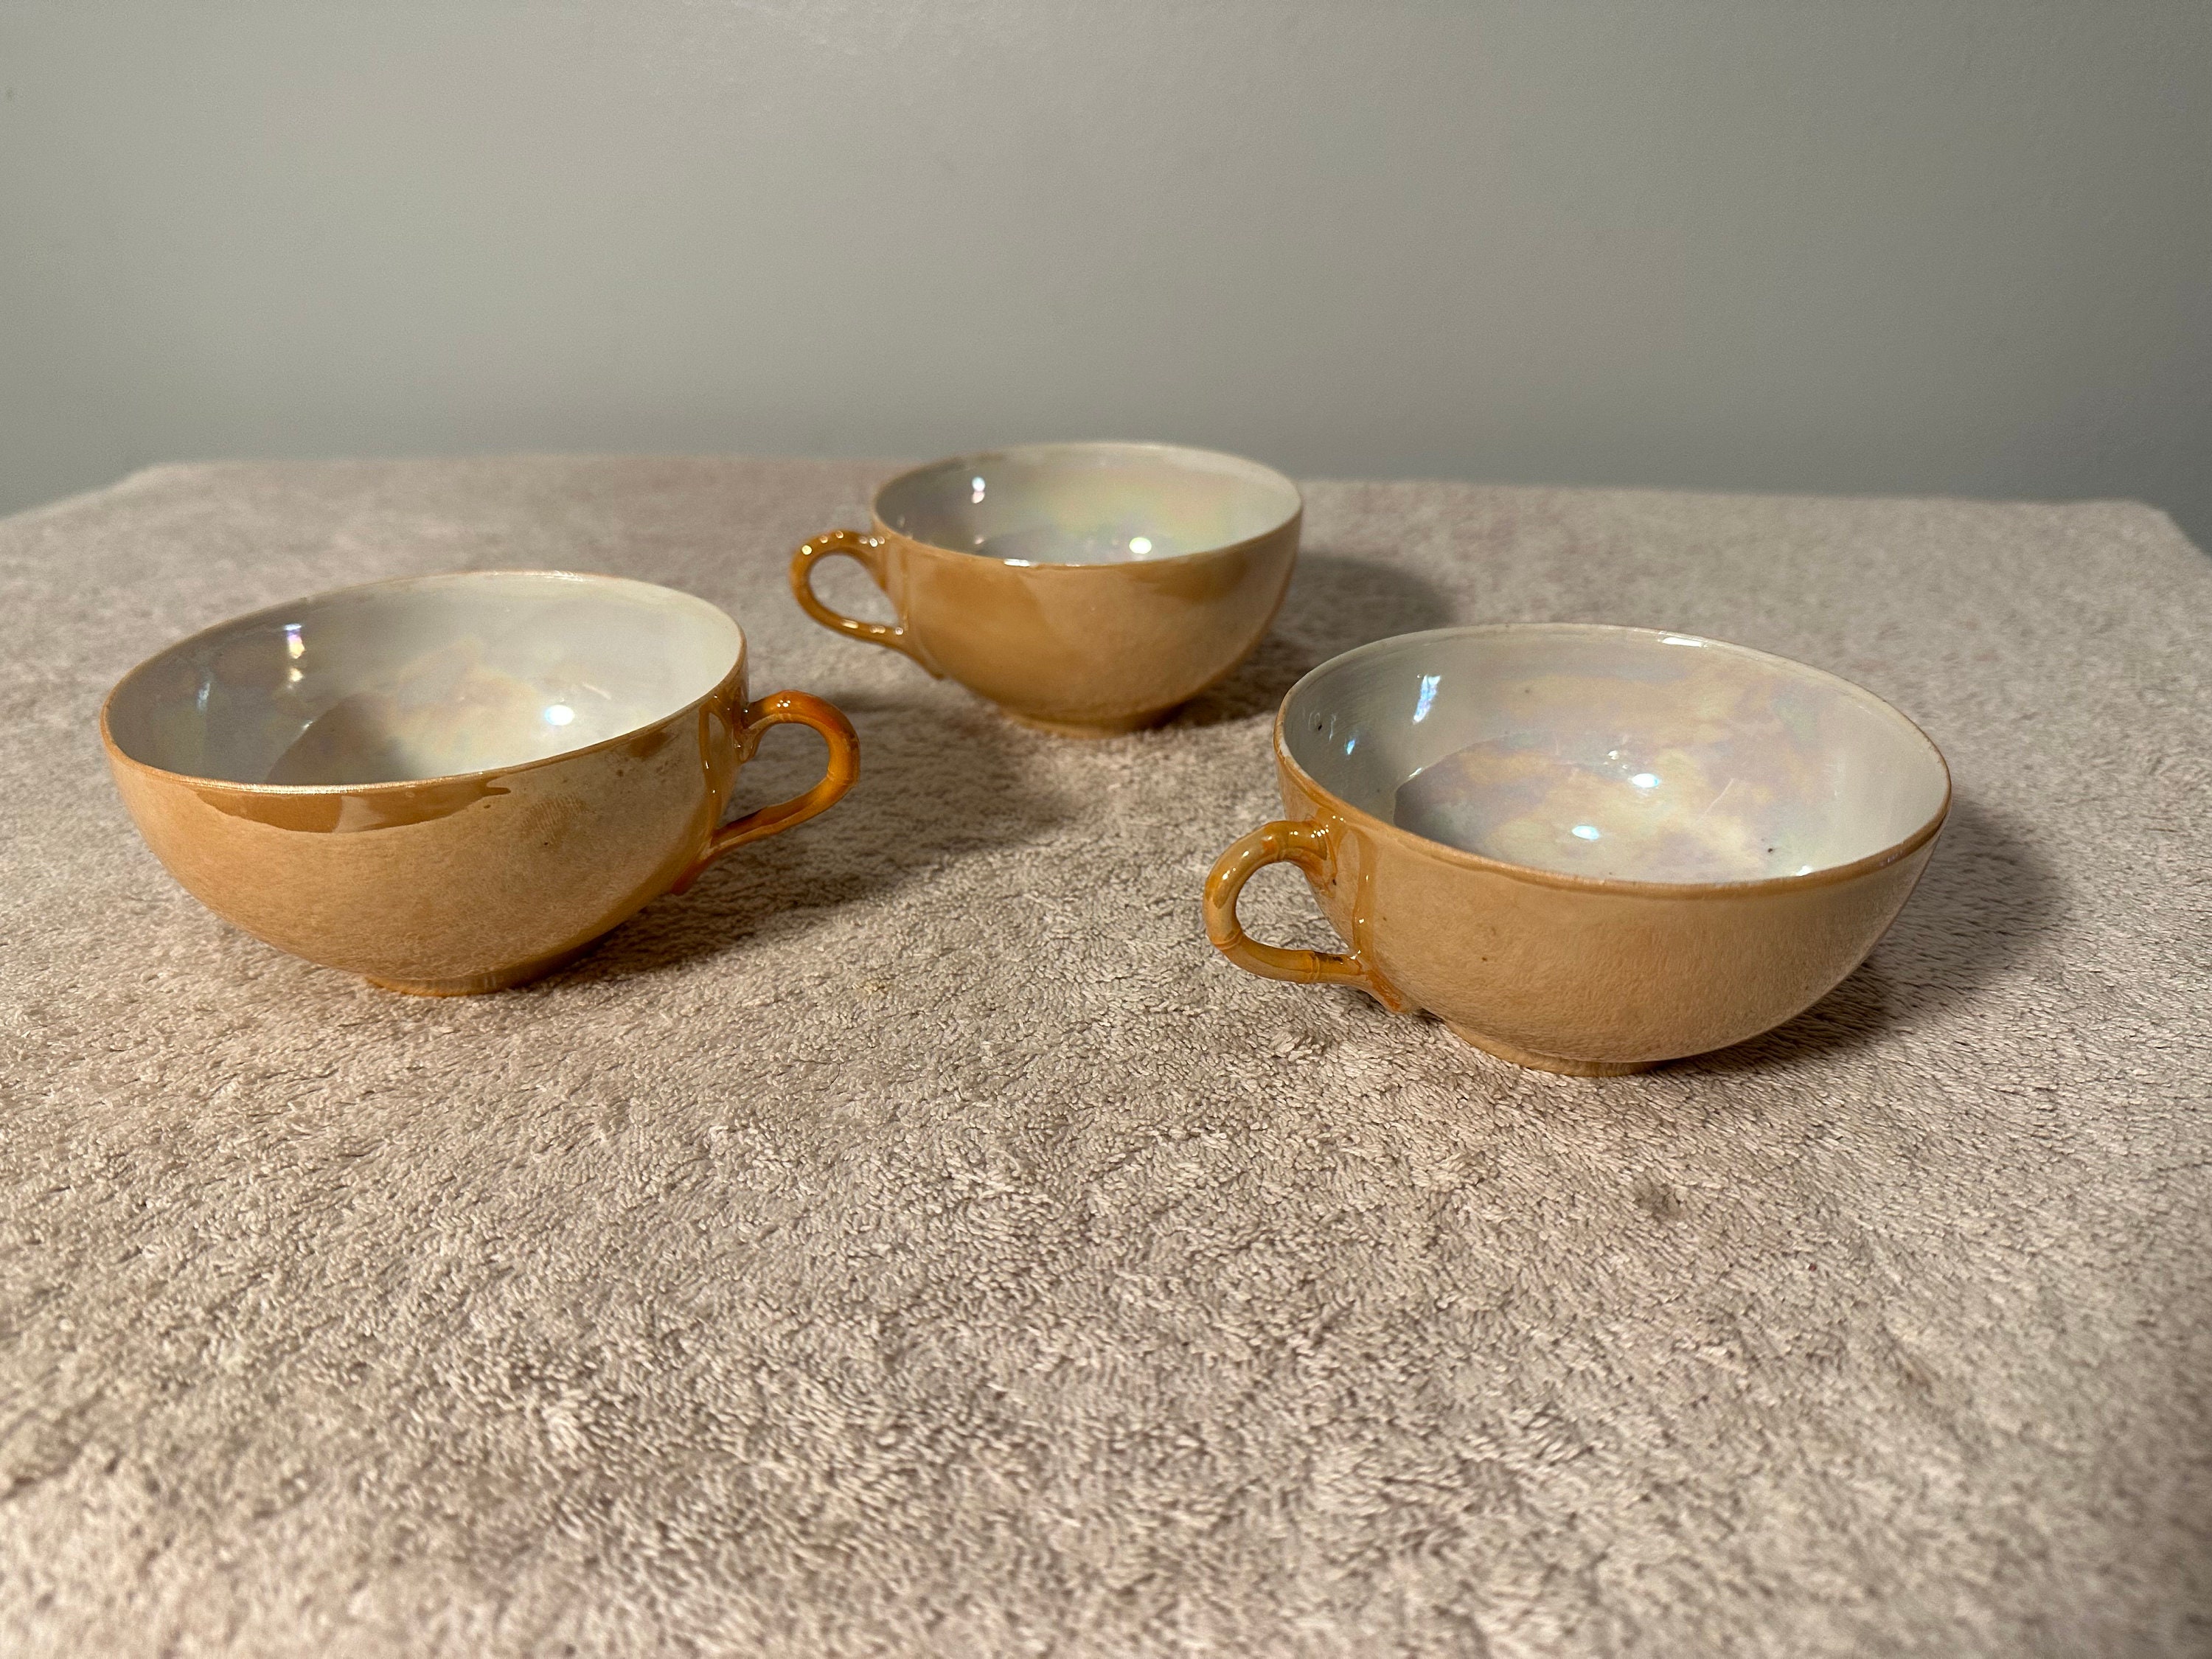 3 Piece Vintage Floral Porcelain Tea Cup Set Perfect For - Temu